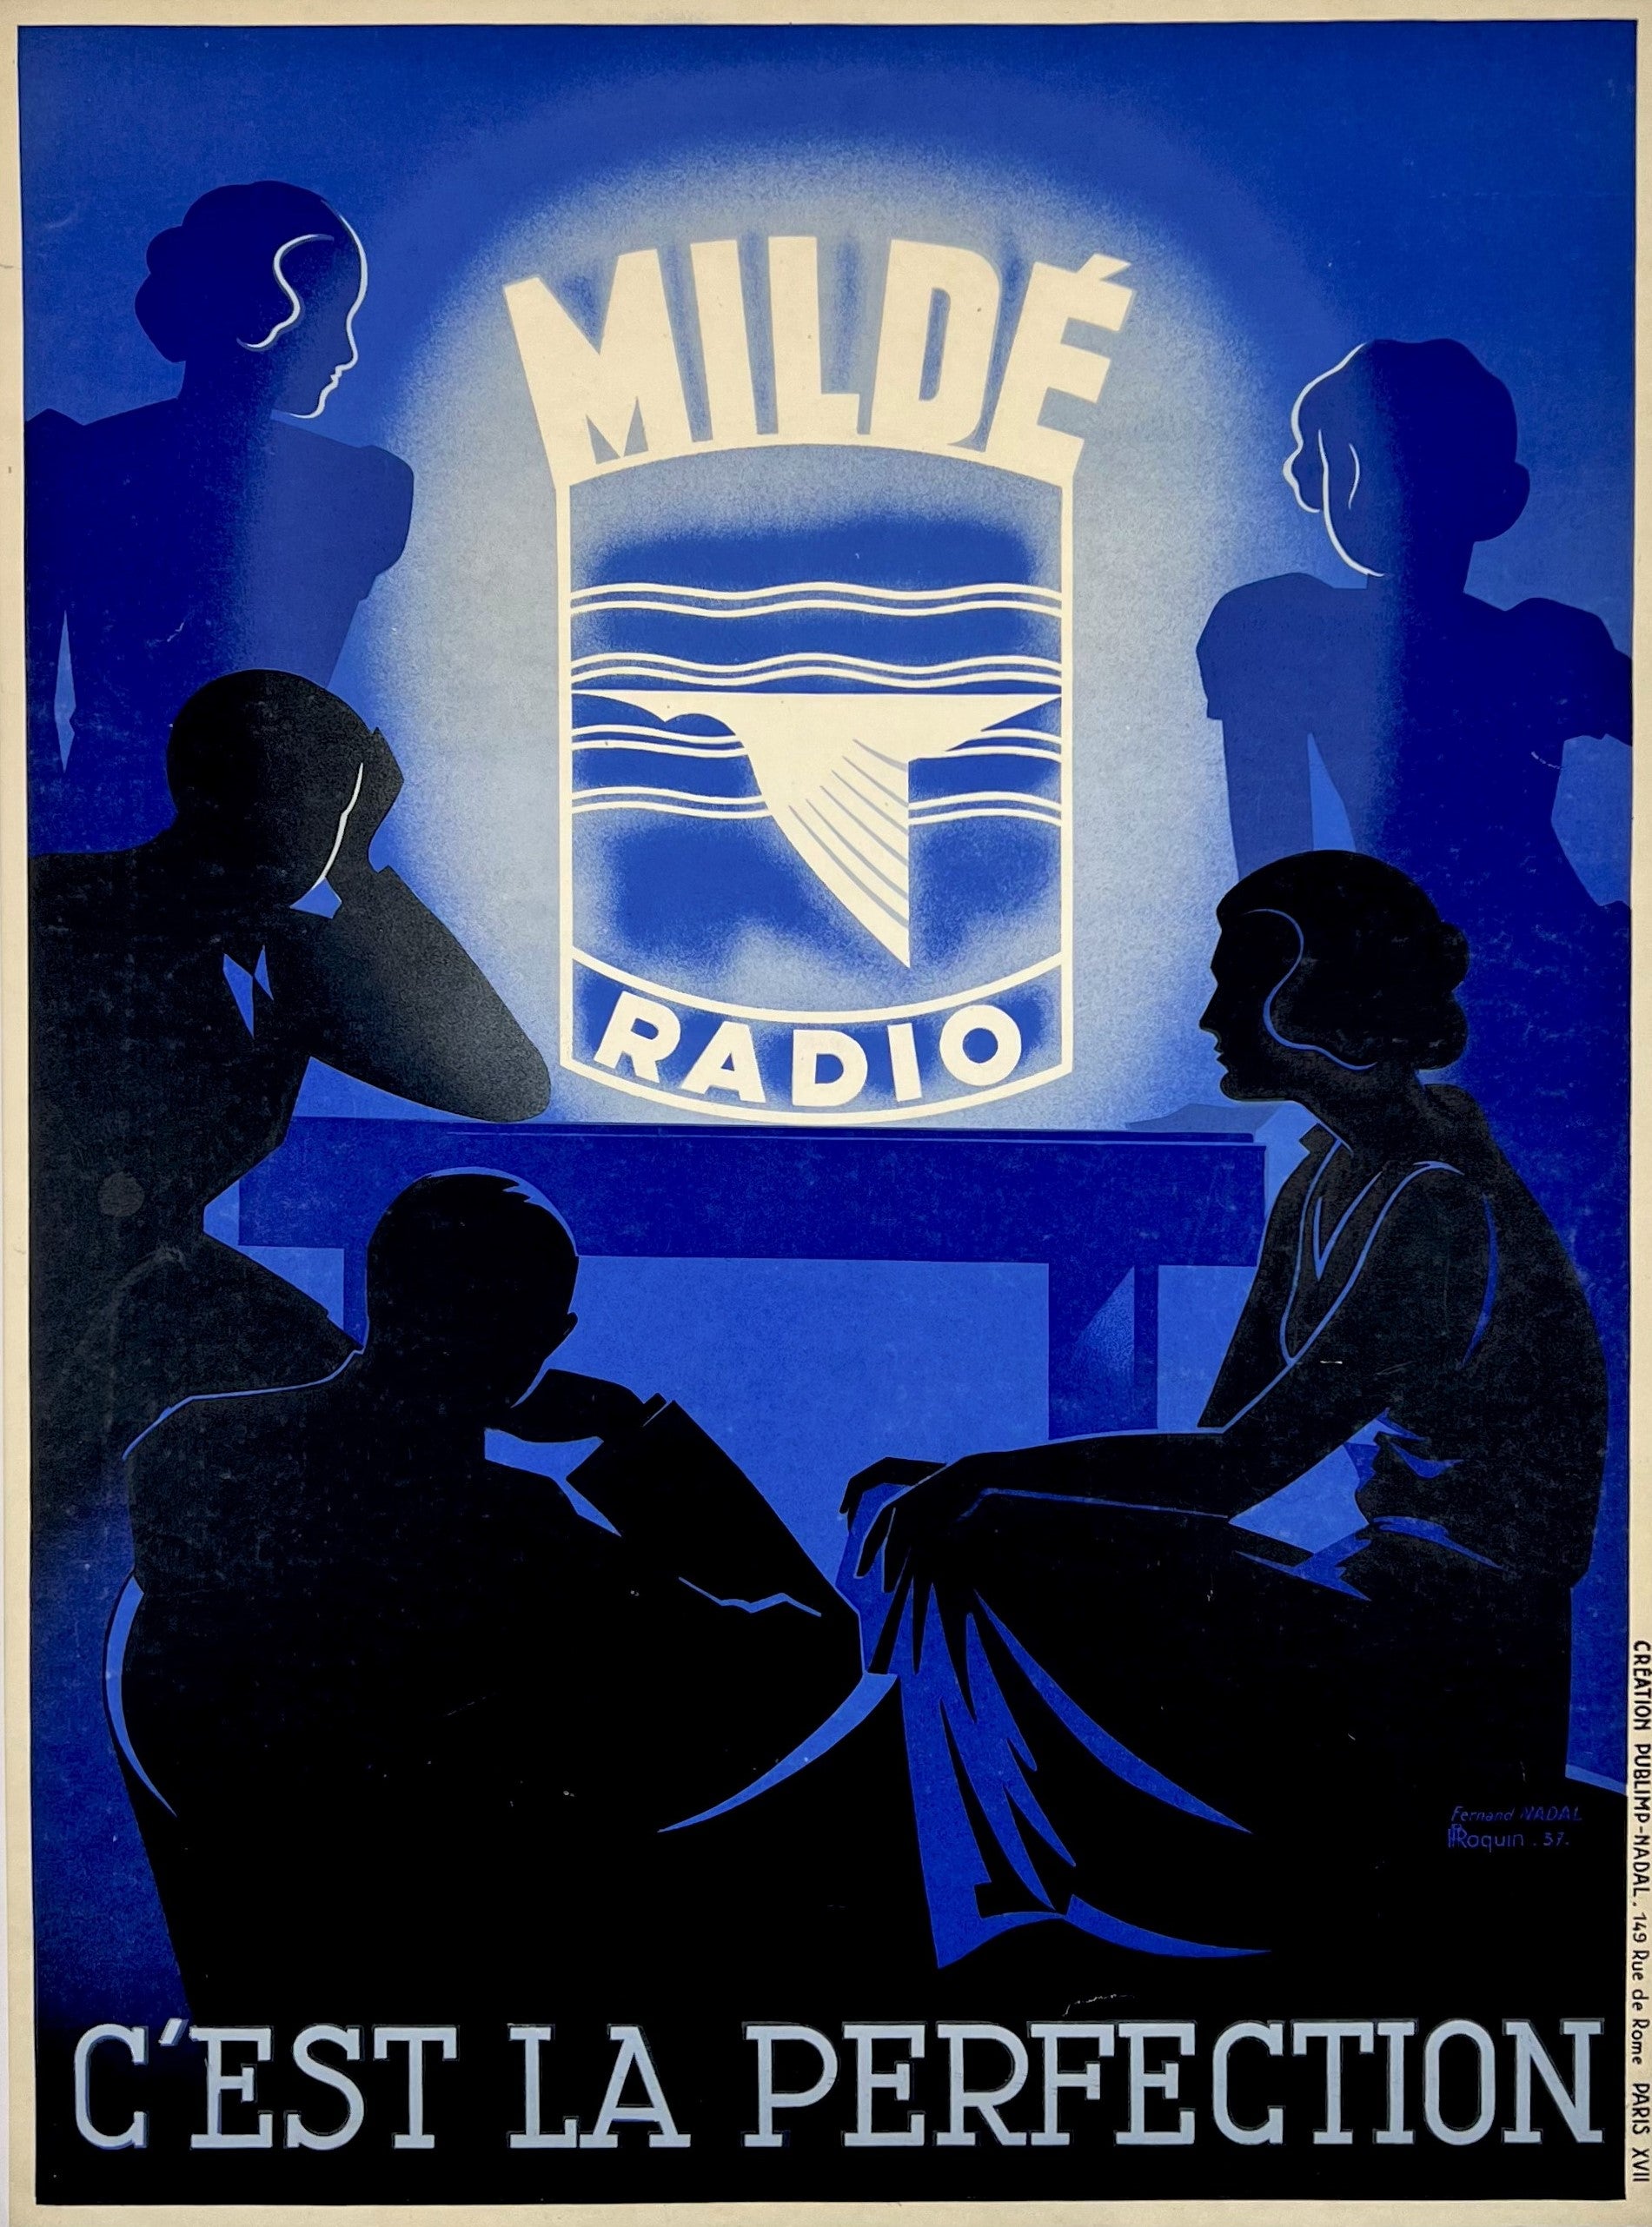 Milde Radio - Authentic Vintage Poster